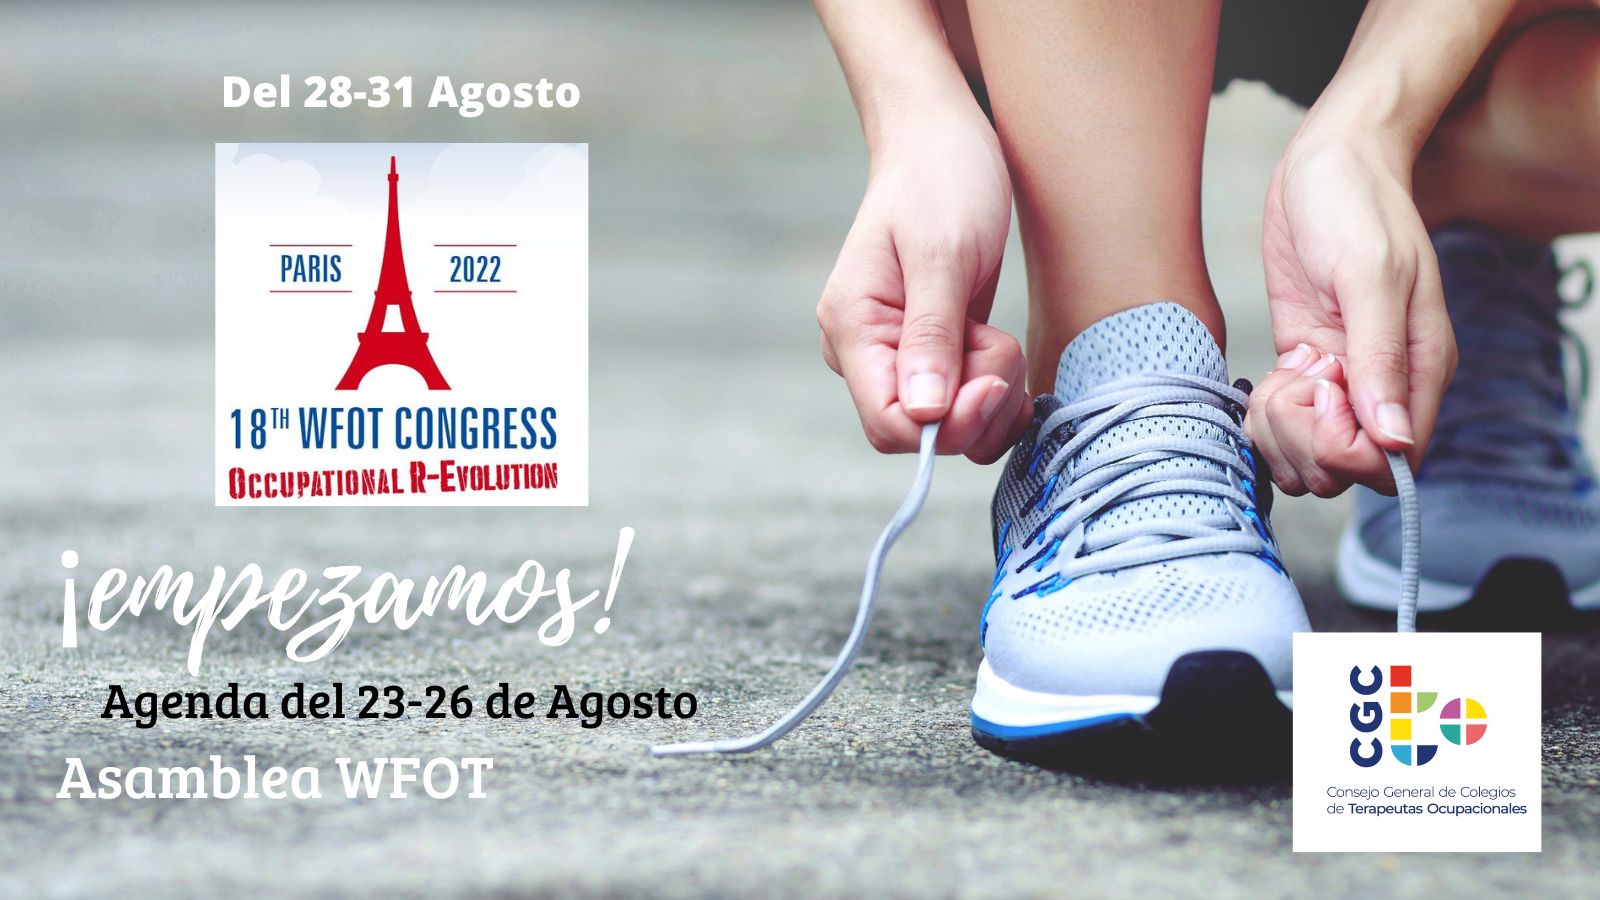 El próximo Congreso y Exposición Internacional WFOT 2022 se llevará a cabo en París, Francia, del 28 al 31 de agosto de 2022.El tema es 'Revolución ocupacional', y el programa contará con expertos líderes mundiales, eventos sociales únicos y una exhibición.